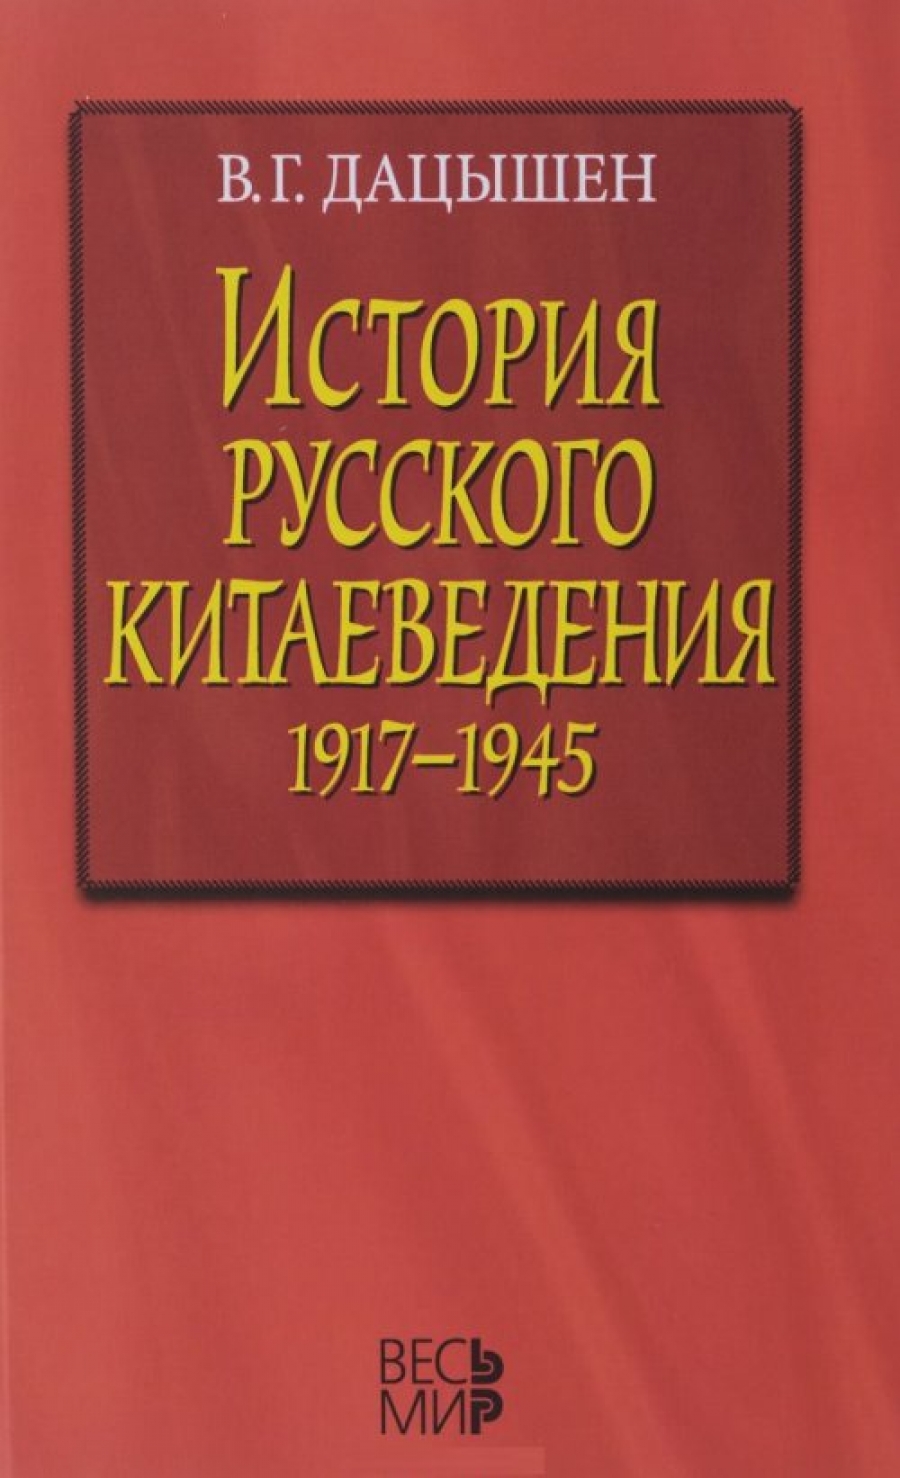  ..    1917-1945  